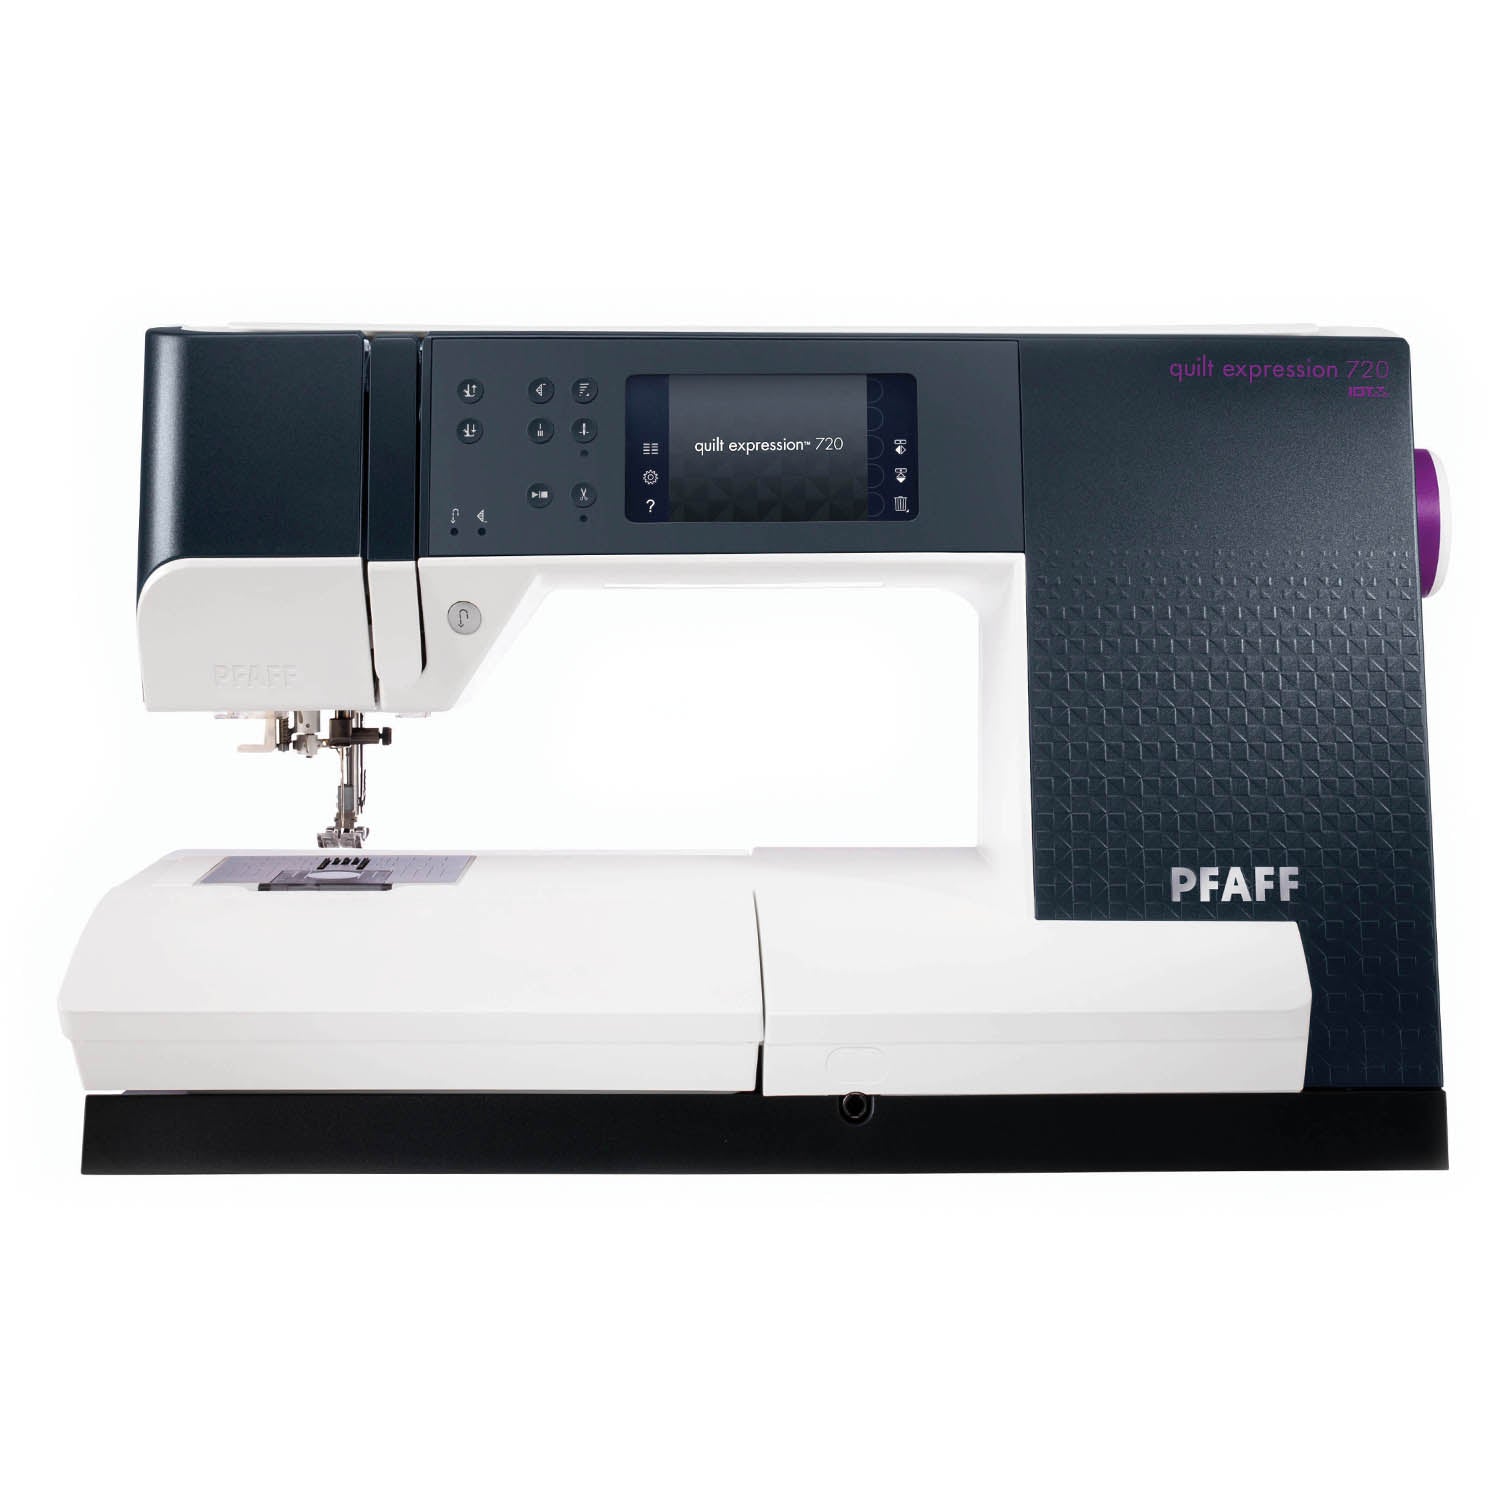 PFAFF Quilt Expression 720 Sewing Machine